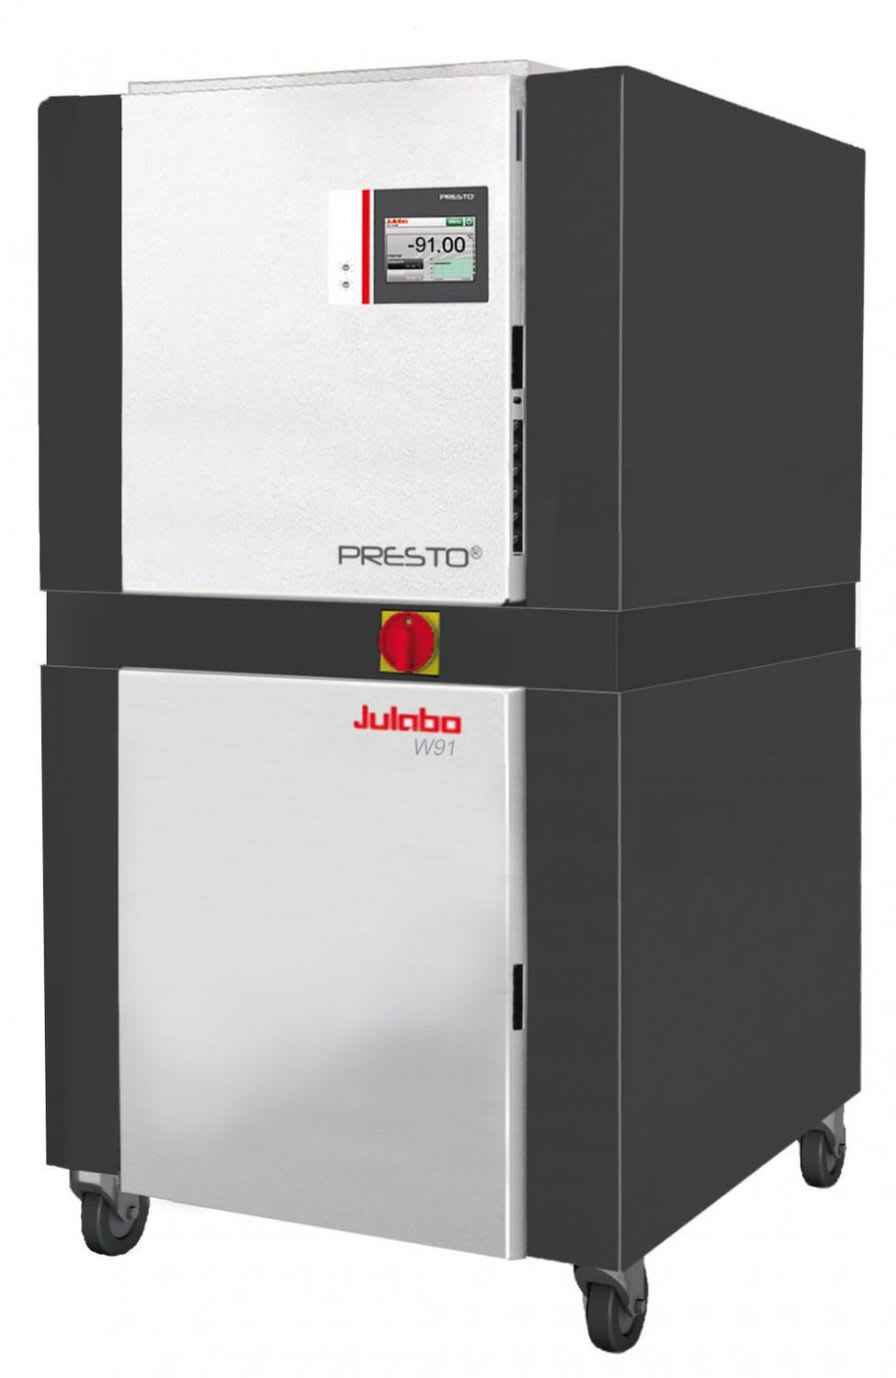 Laboratory thermostat / process -91 °C ... +250 °C | PRESTO® W91t Julabo